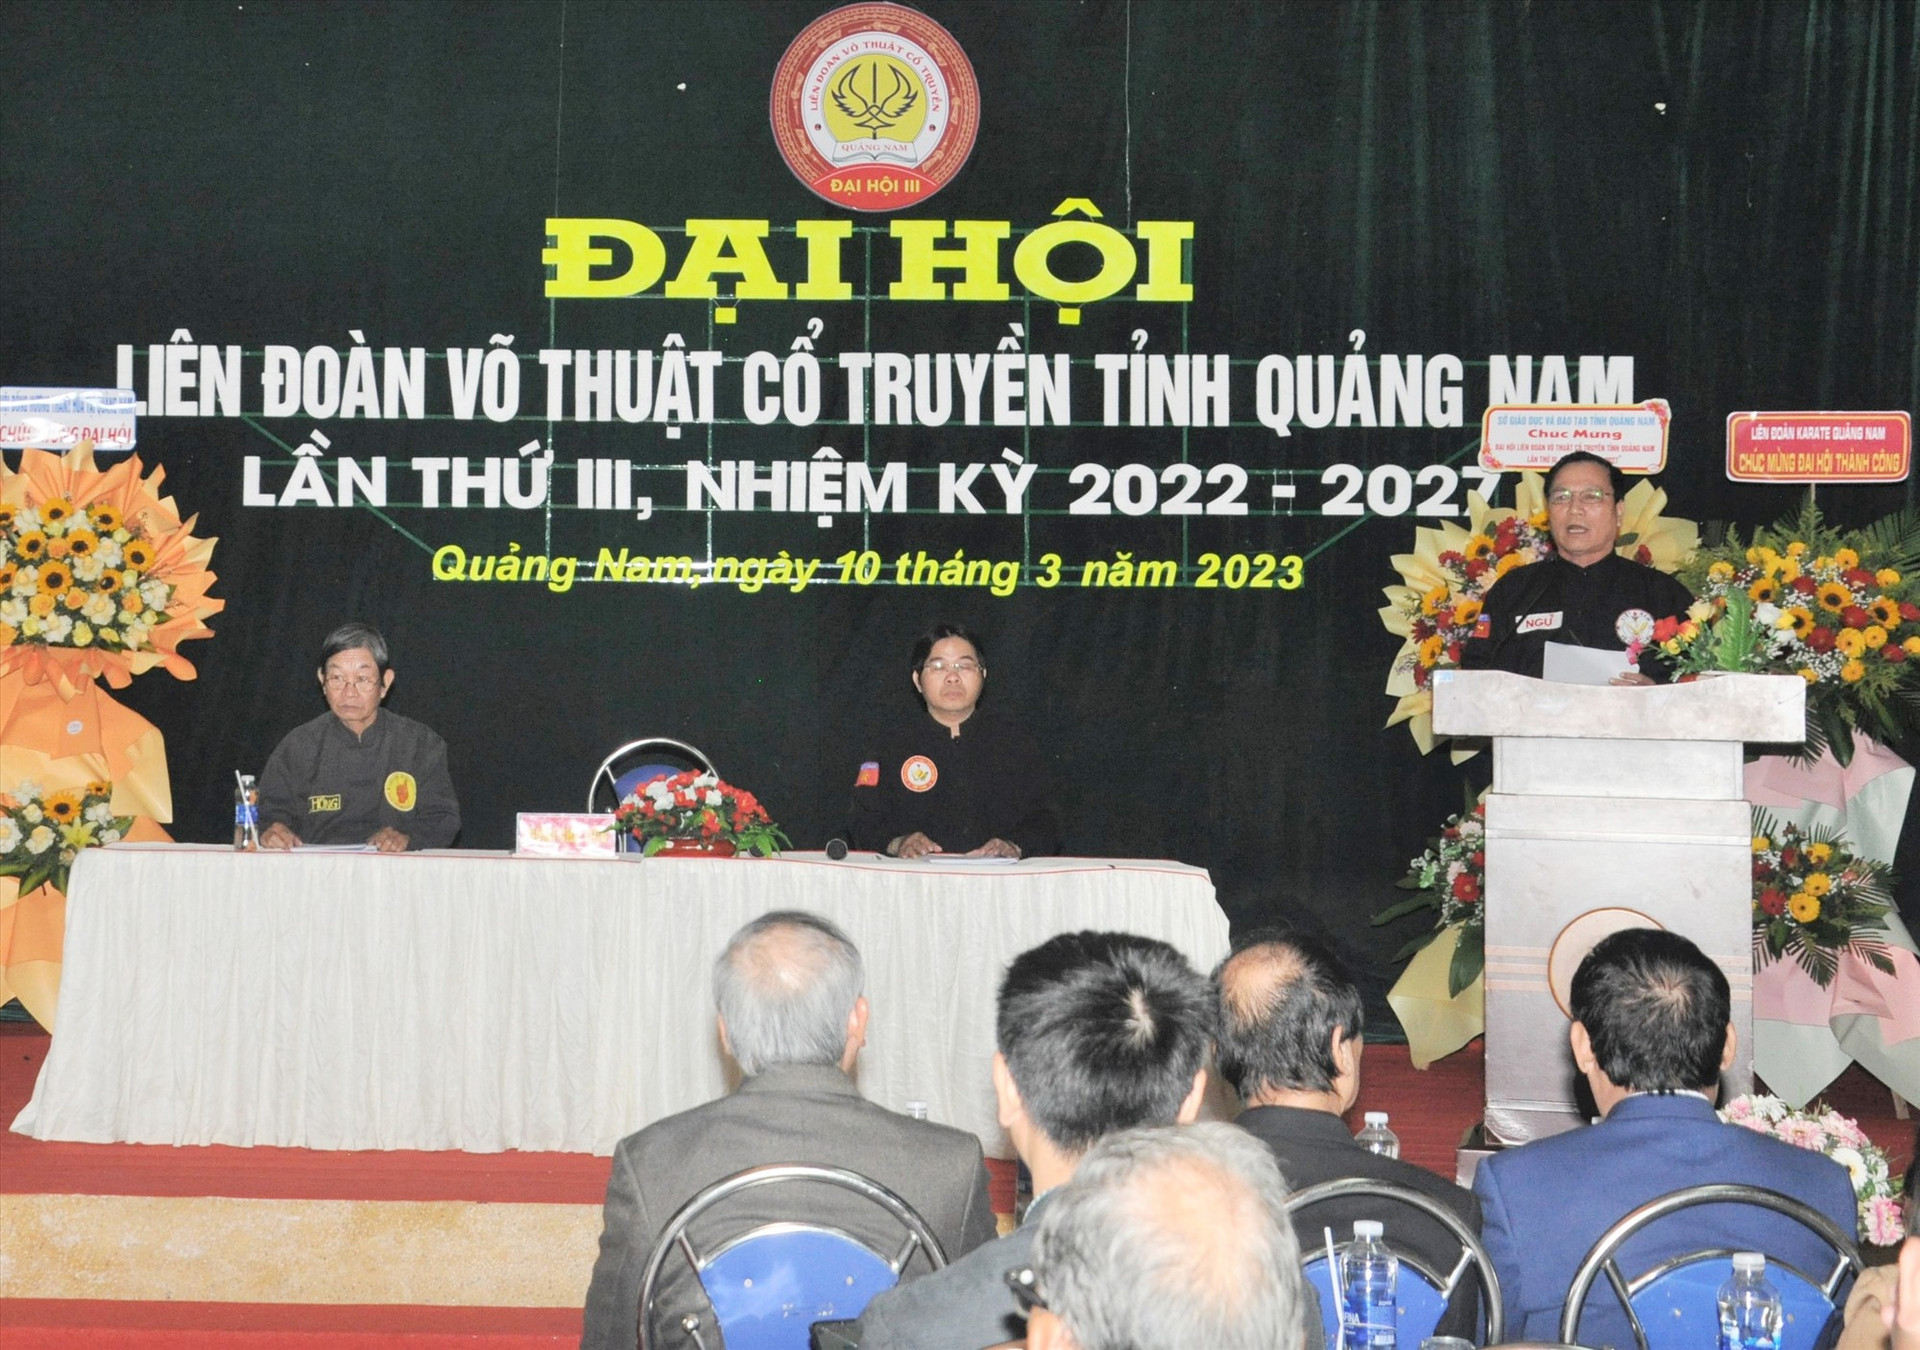 Đại hội Liên đoàn võ thuật cổ truyền tỉnh Quảng Nam, nhiệm kỳ 2022-2027. Ảnh: A.SẮC